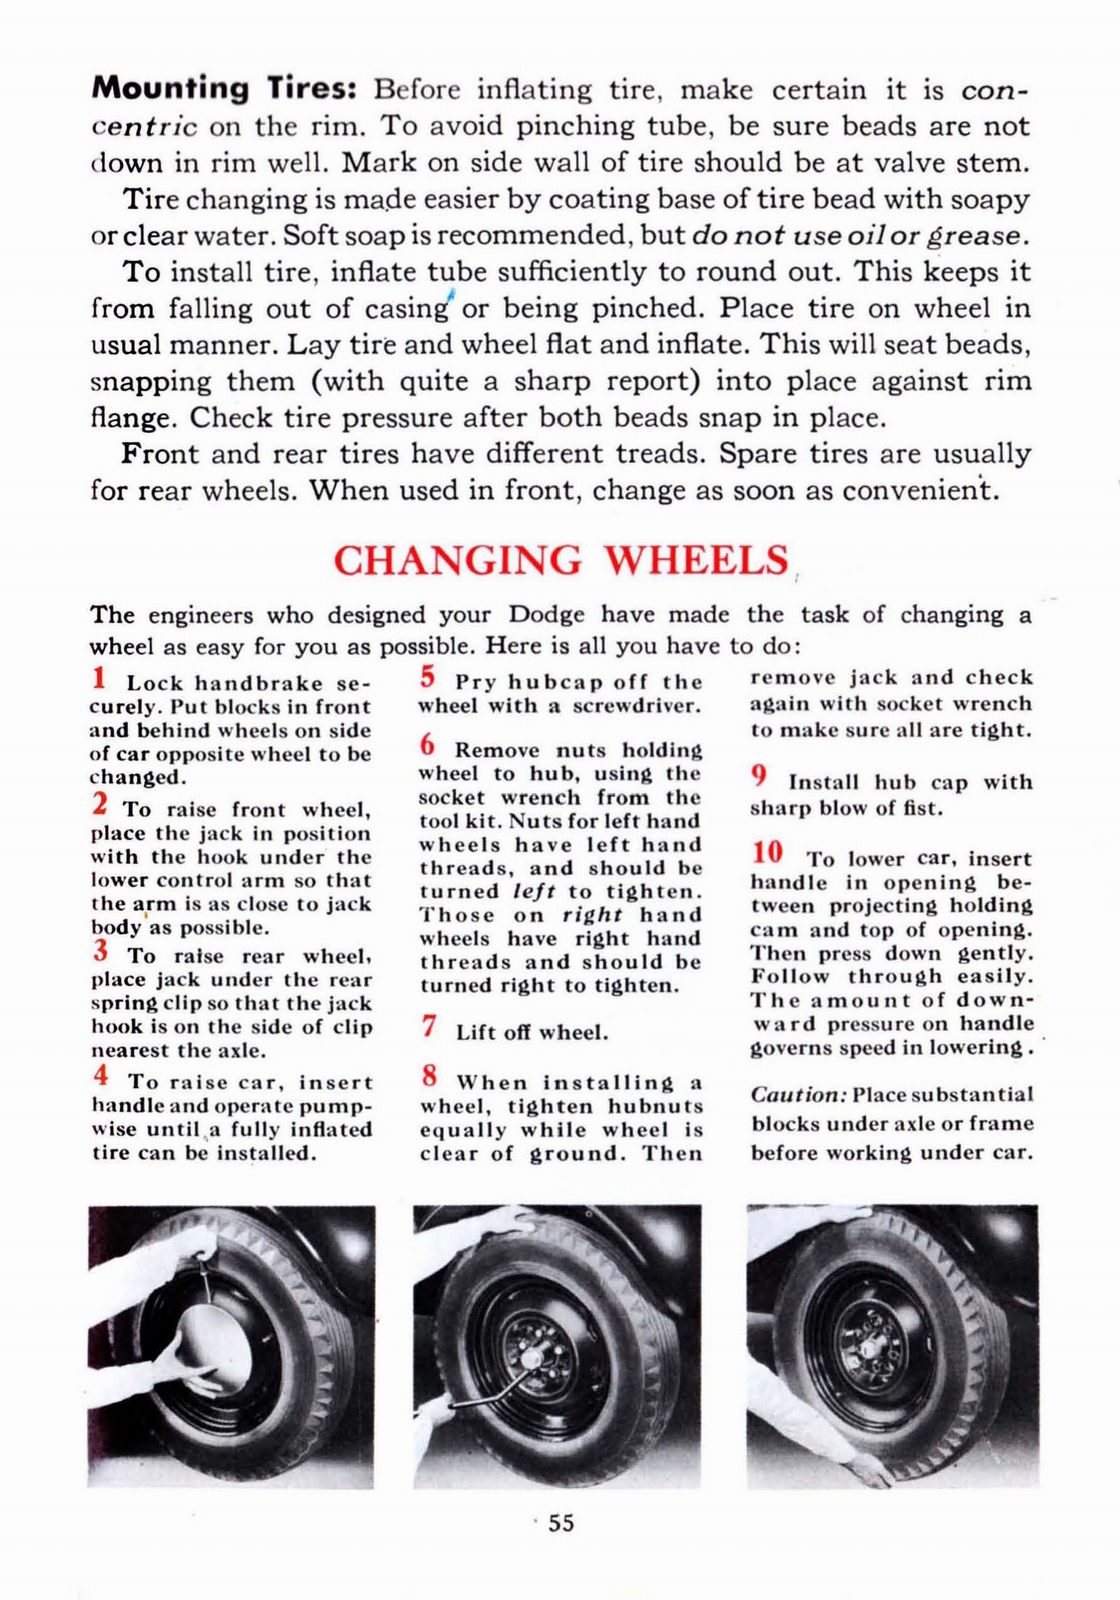 n_1941 Dodge Owners Manual-55.jpg